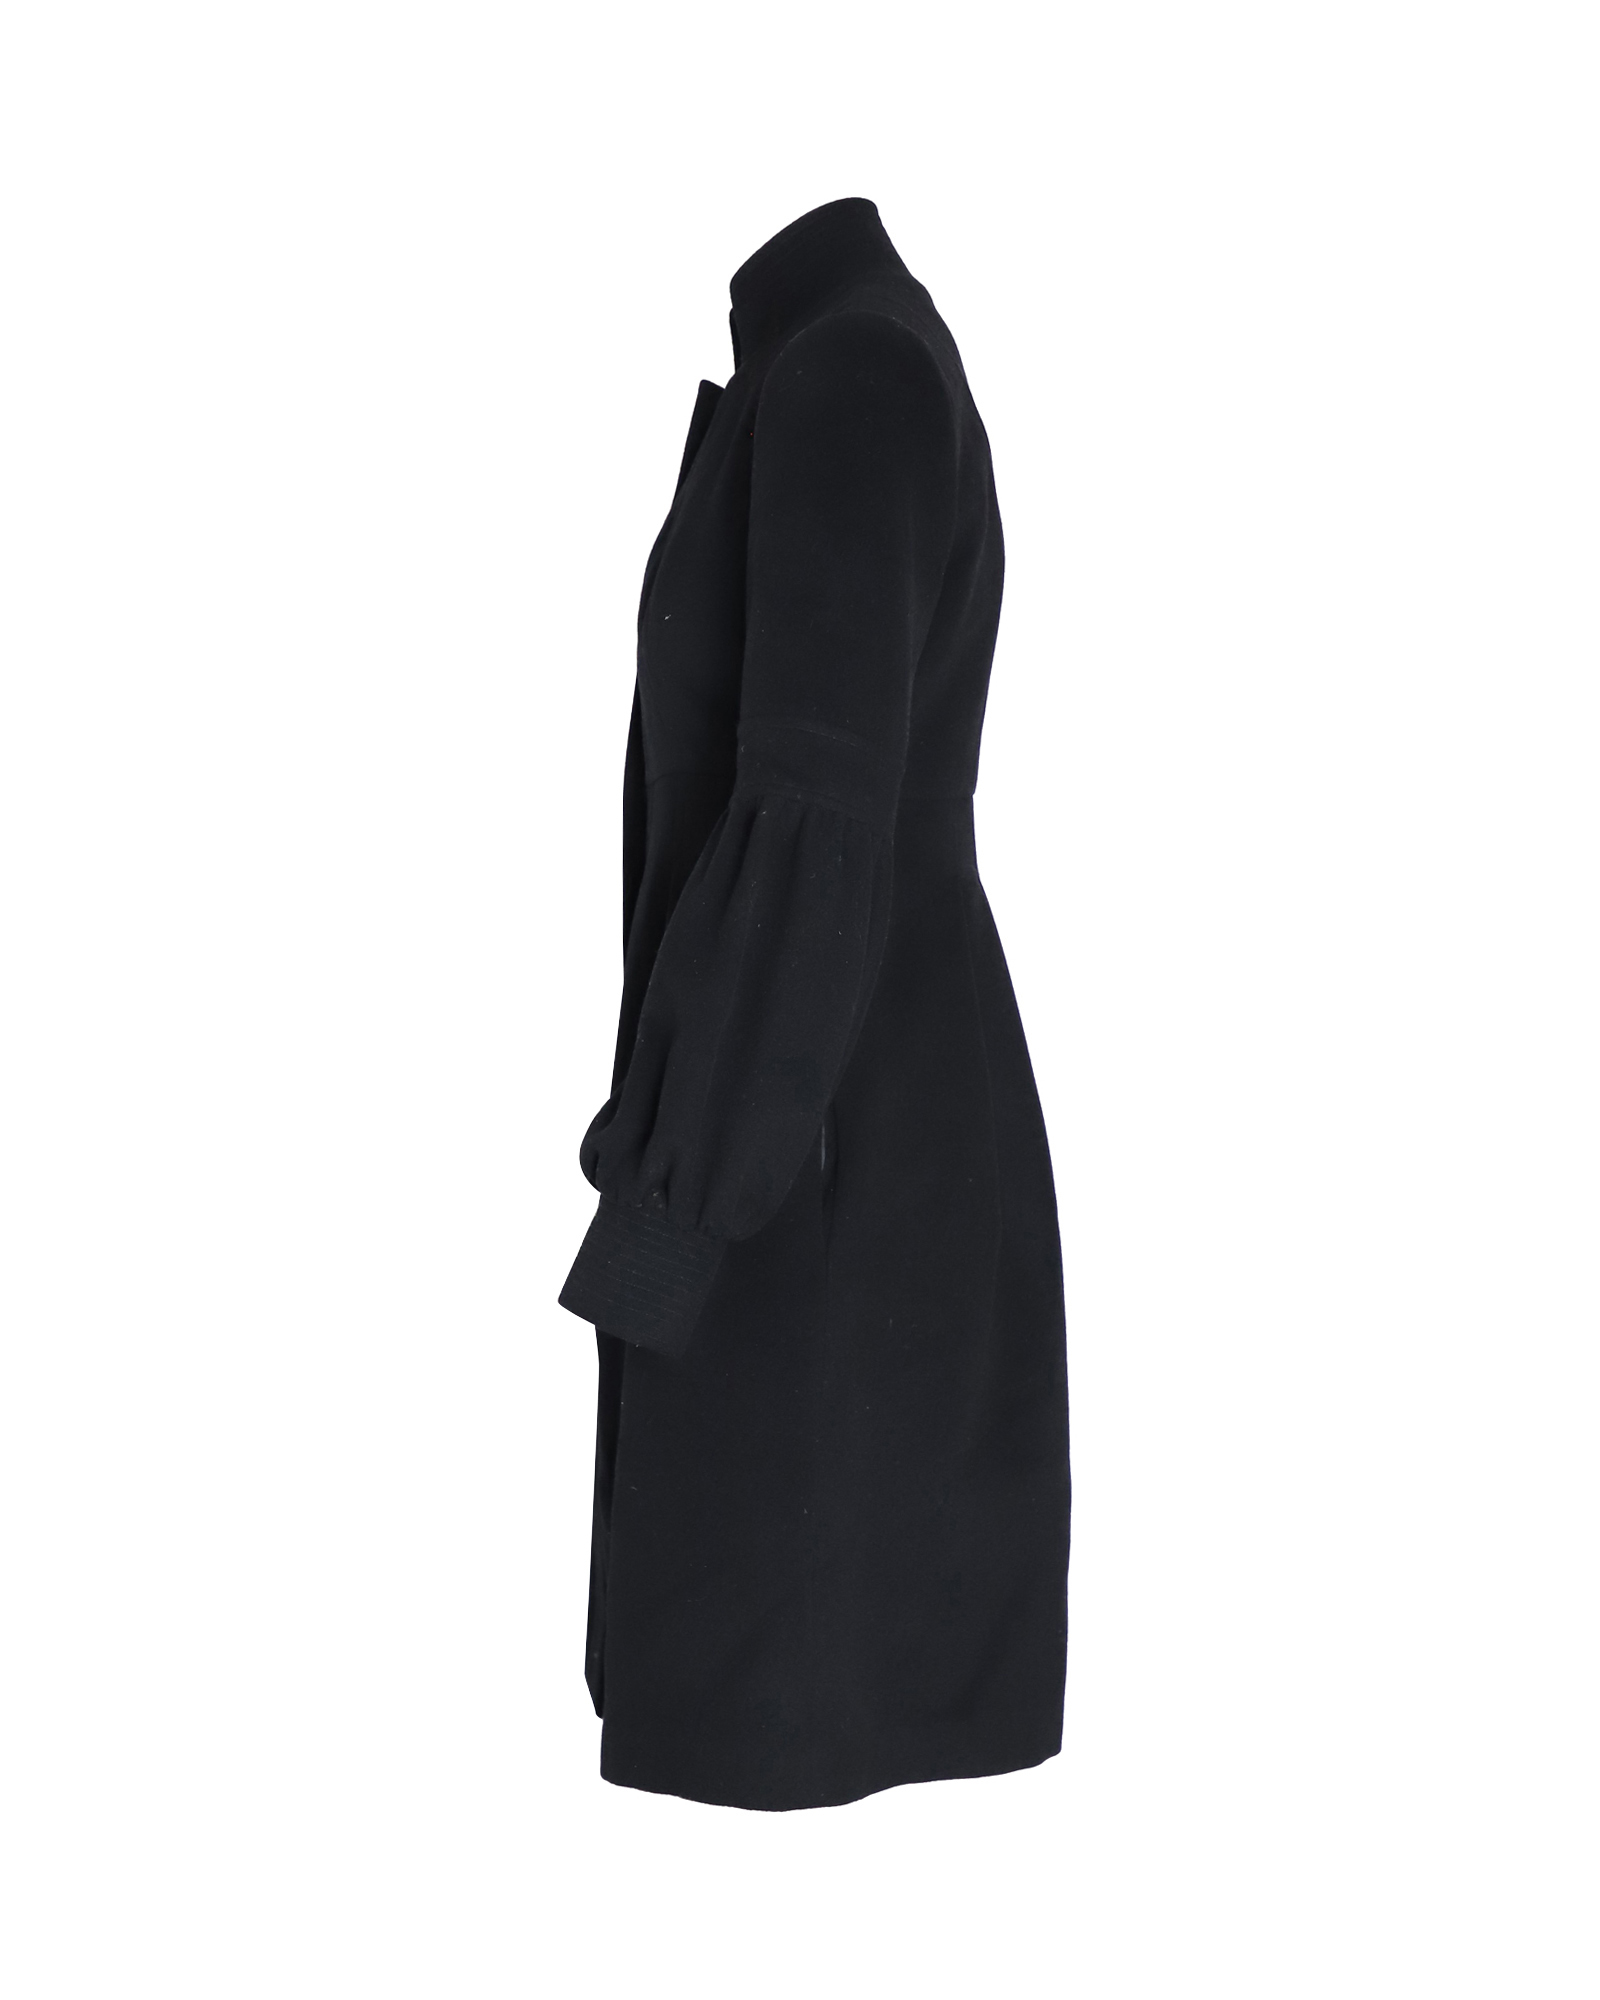 Classic Black Wool Dress Coat